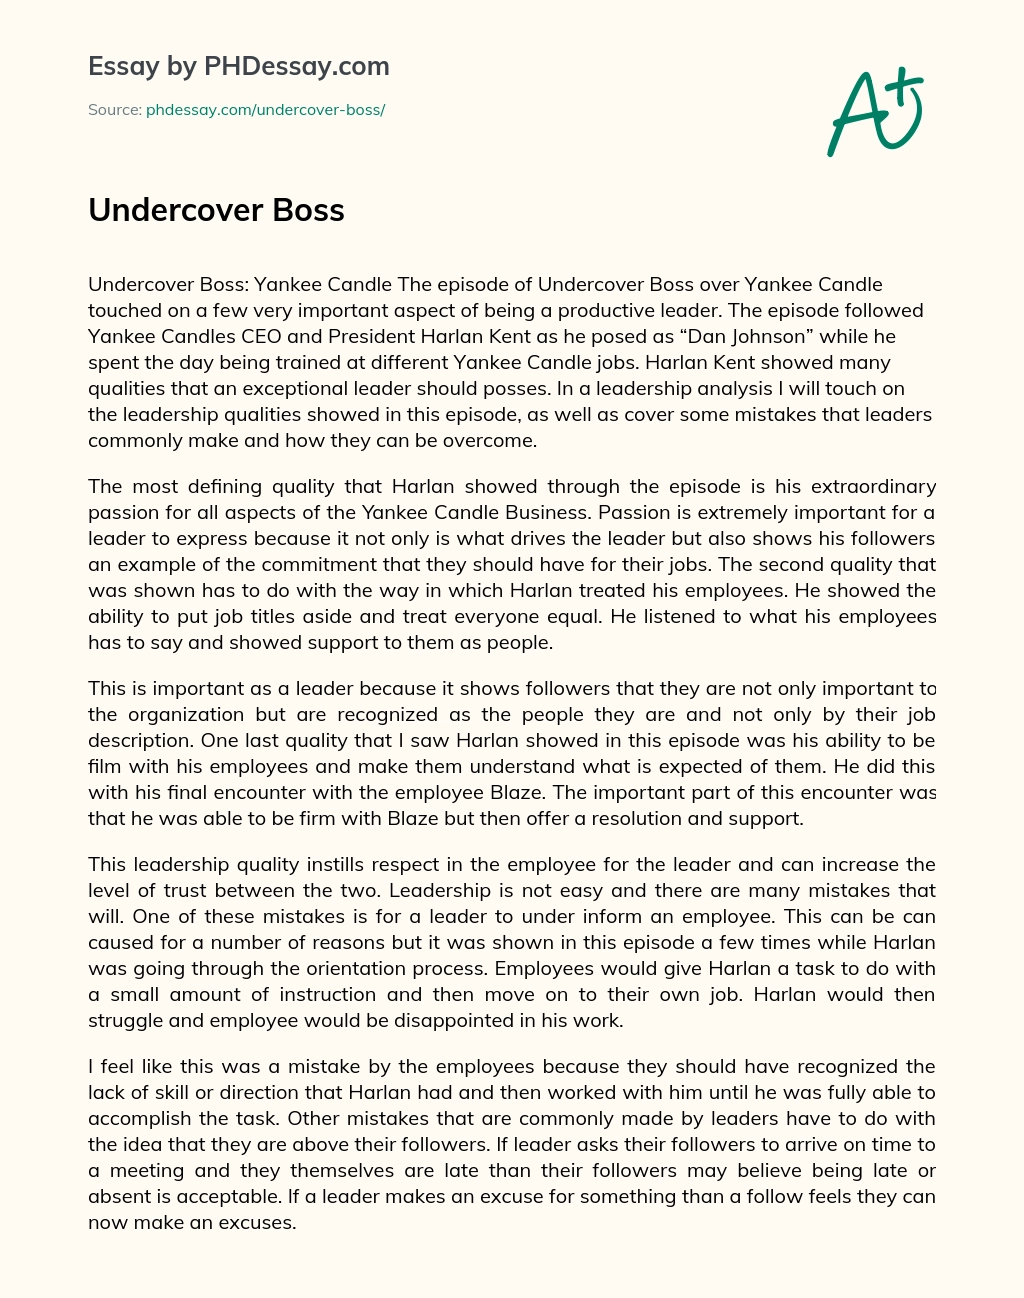 Undercover Boss essay